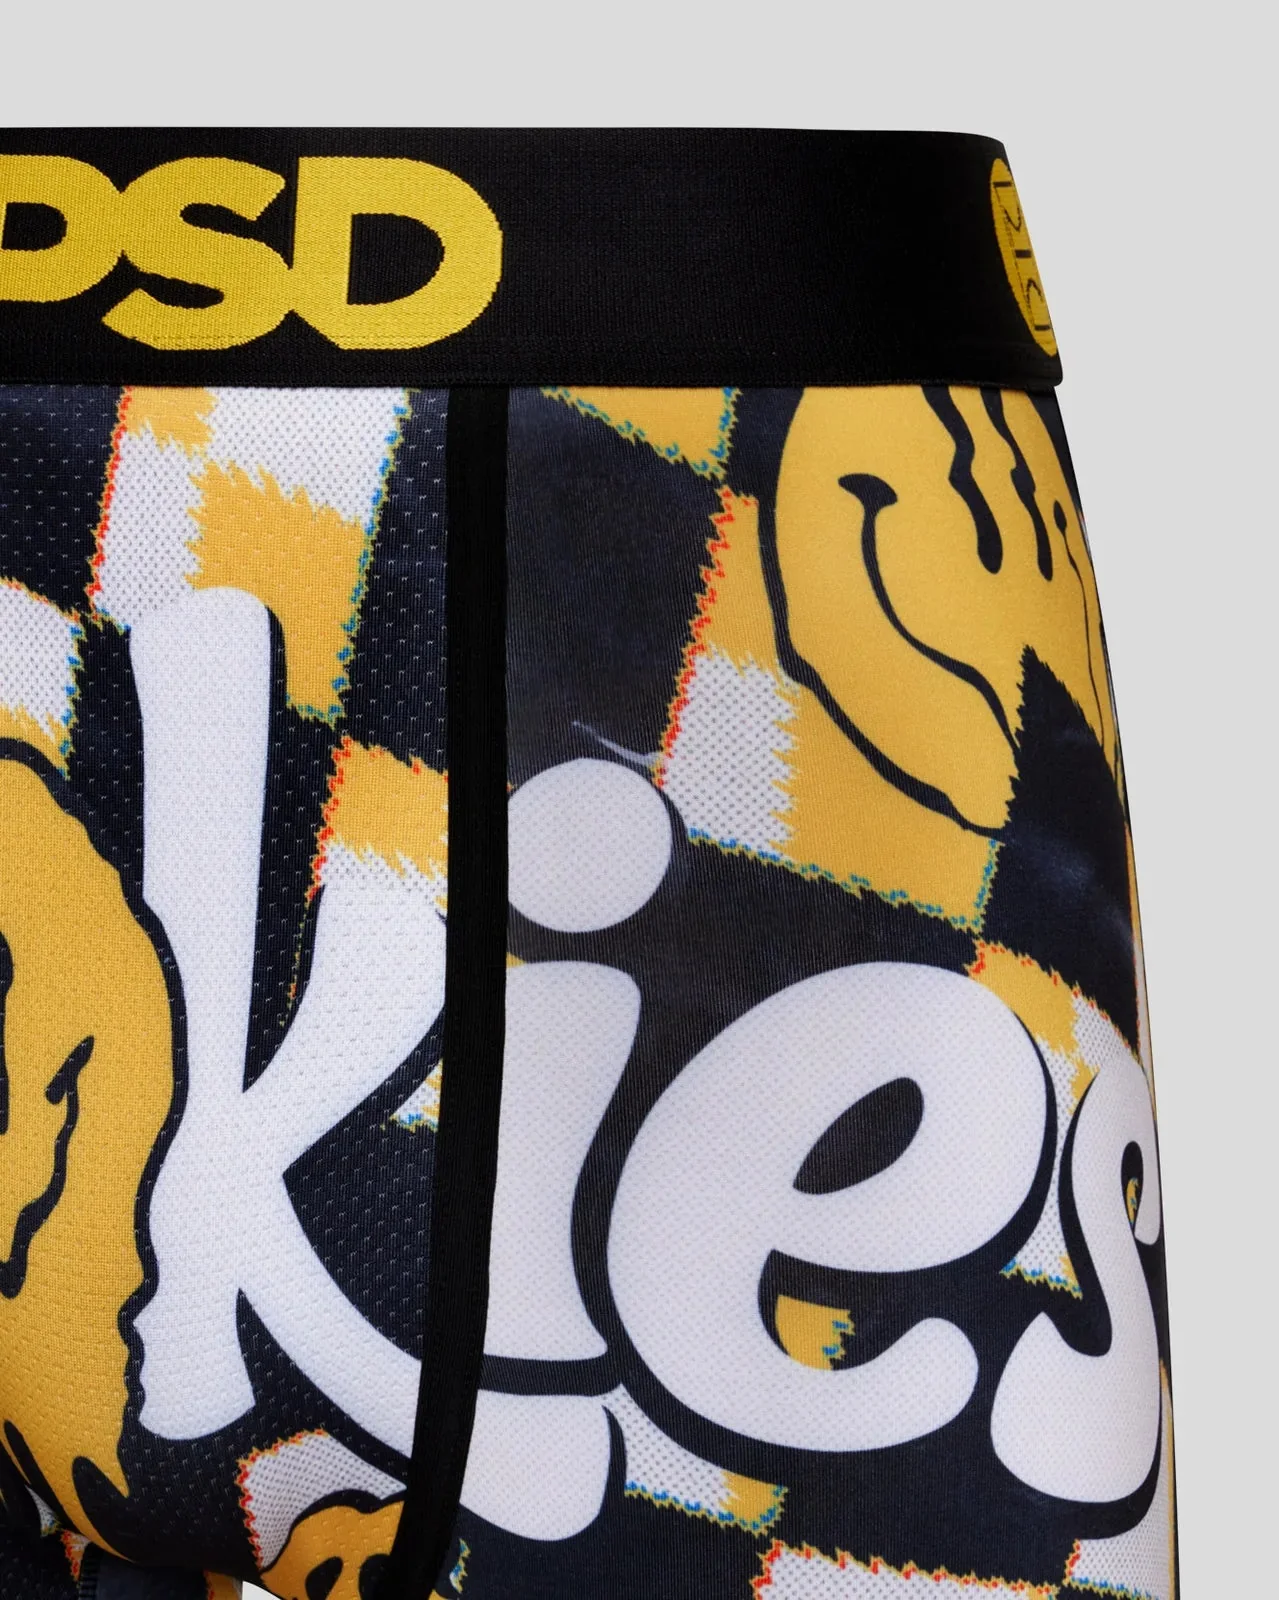 PSD X Cookies Warp Smiles Boxer Brief Underwear– Mainland Skate & Surf